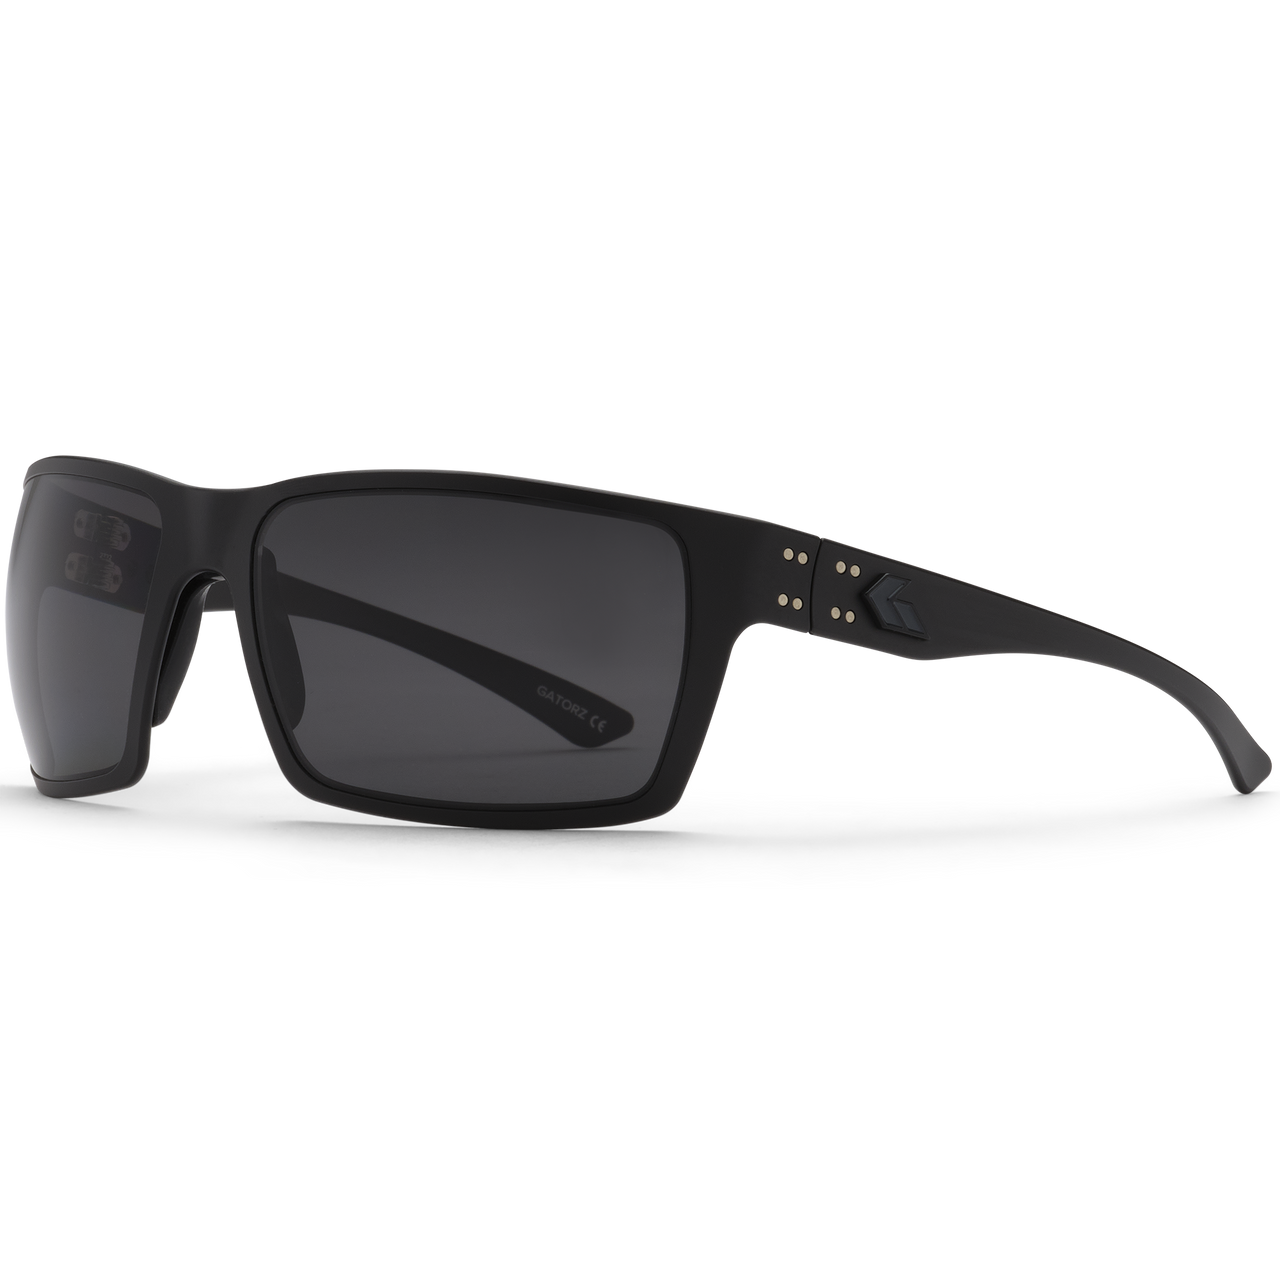 Gatorz Eyewear Marauder Sunglasses, Black, Large 